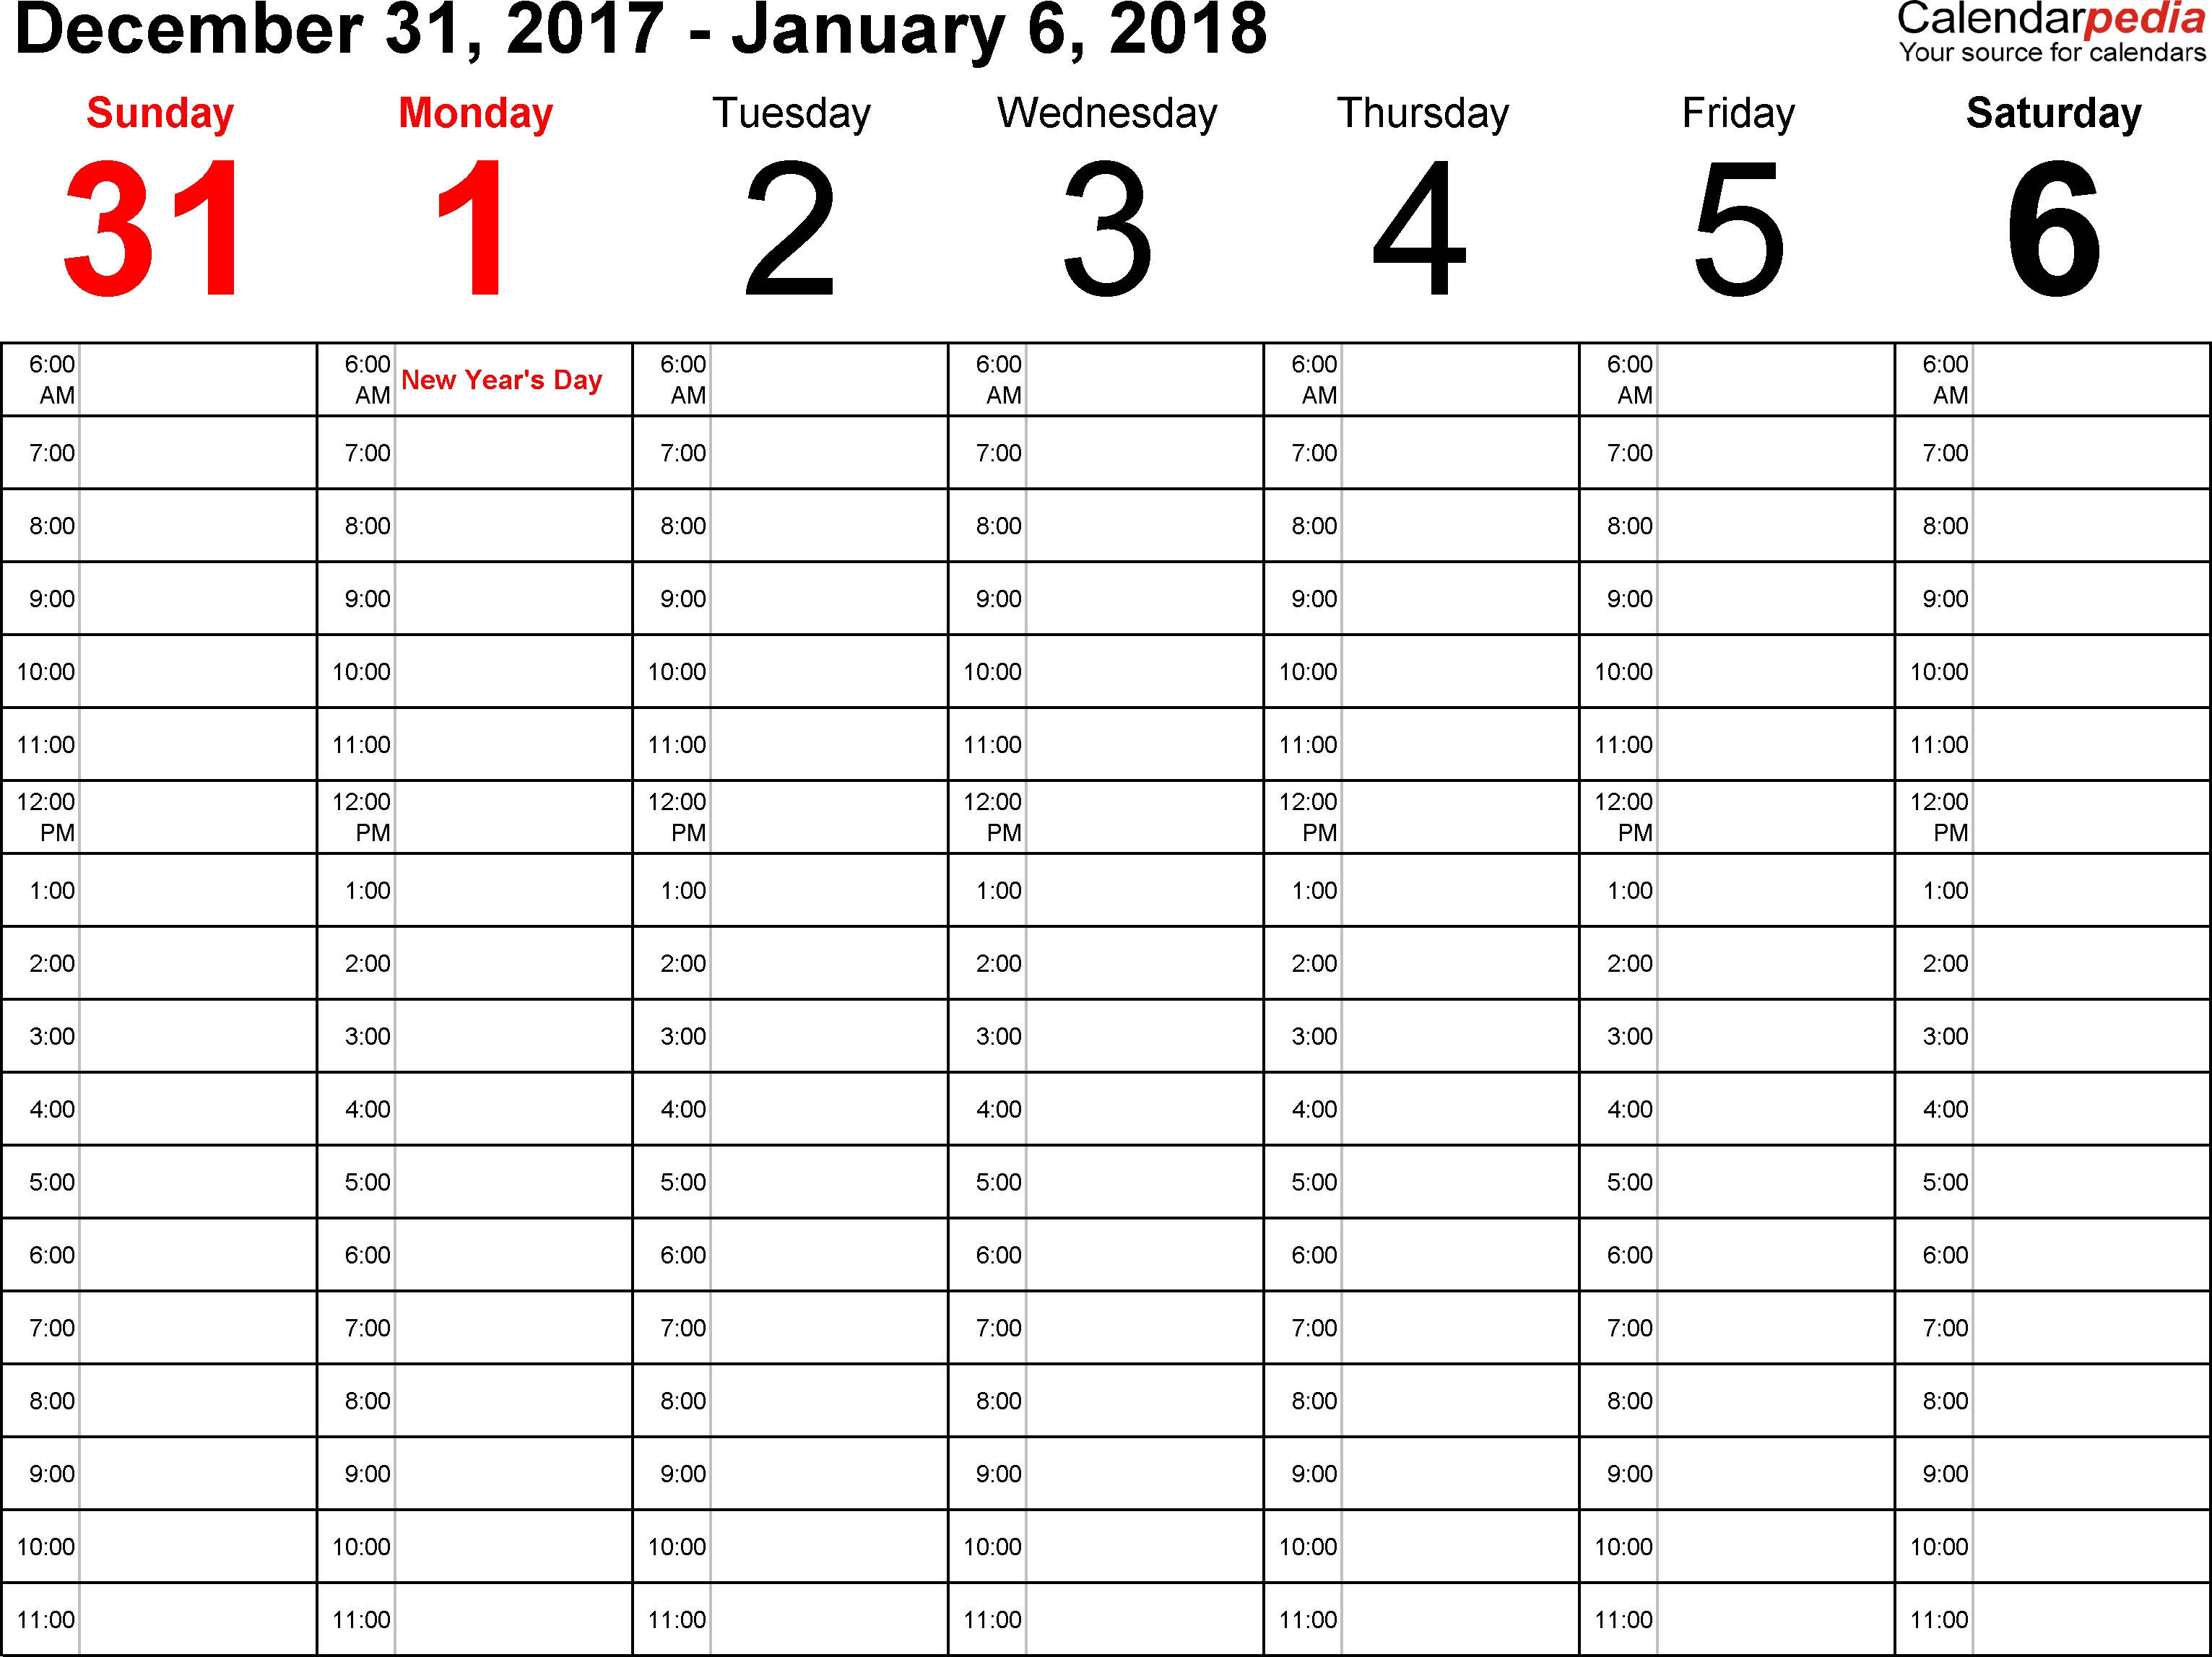 Weekly Calendar 2018 For Word - 12 Free Printable Templates regarding 1 Week Blank Calendar Template